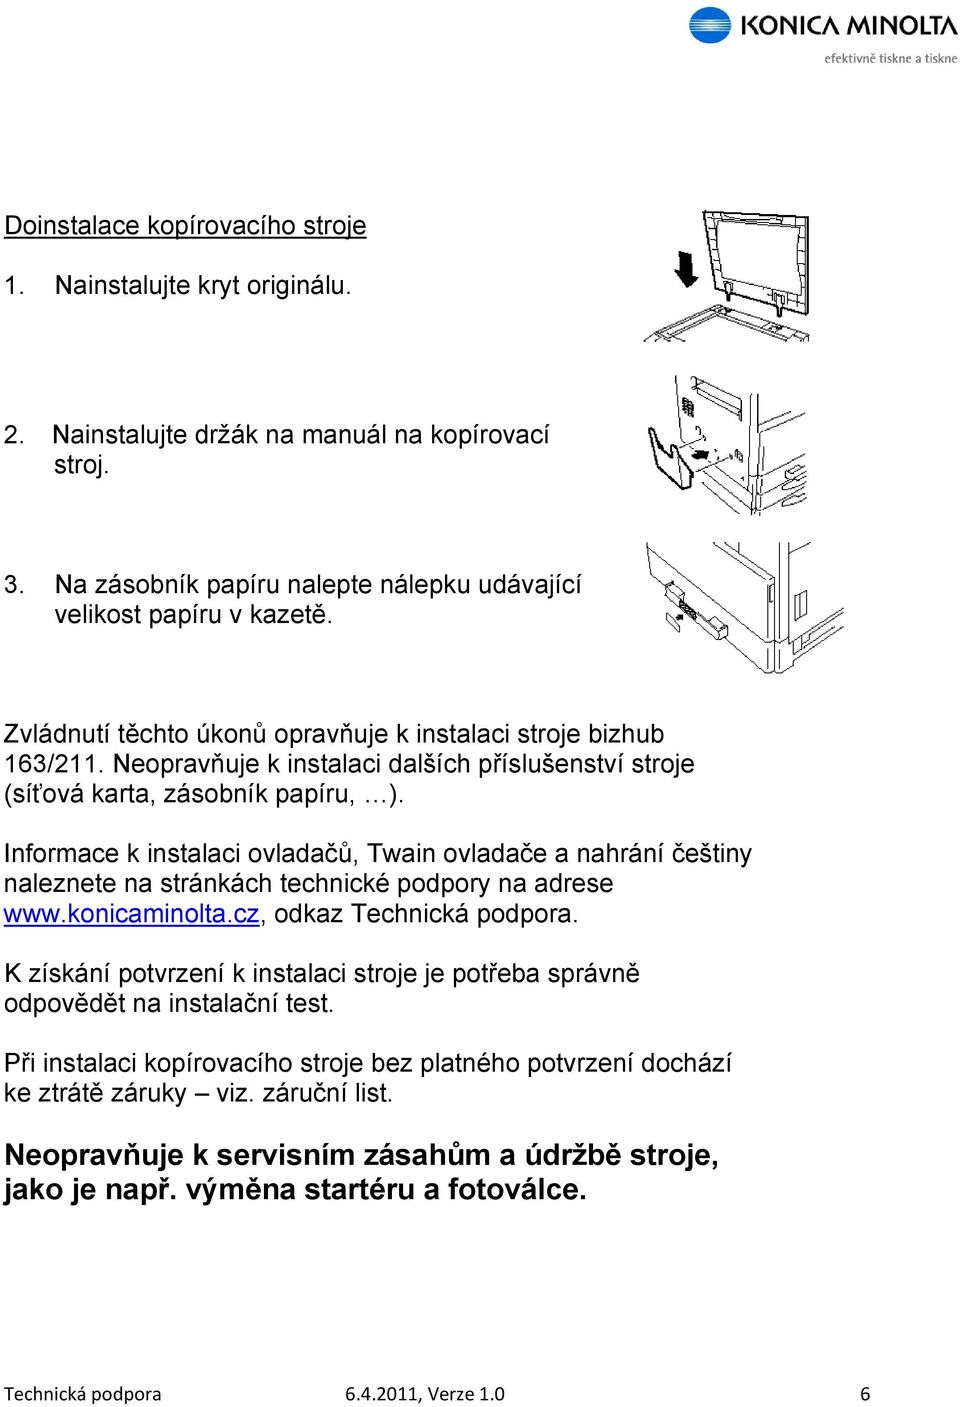 Informace k instalaci ovladačů, Twain ovladače a nahrání češtiny naleznete na stránkách technické podpory na adrese www.konicaminolta.cz, odkaz Technická podpora.